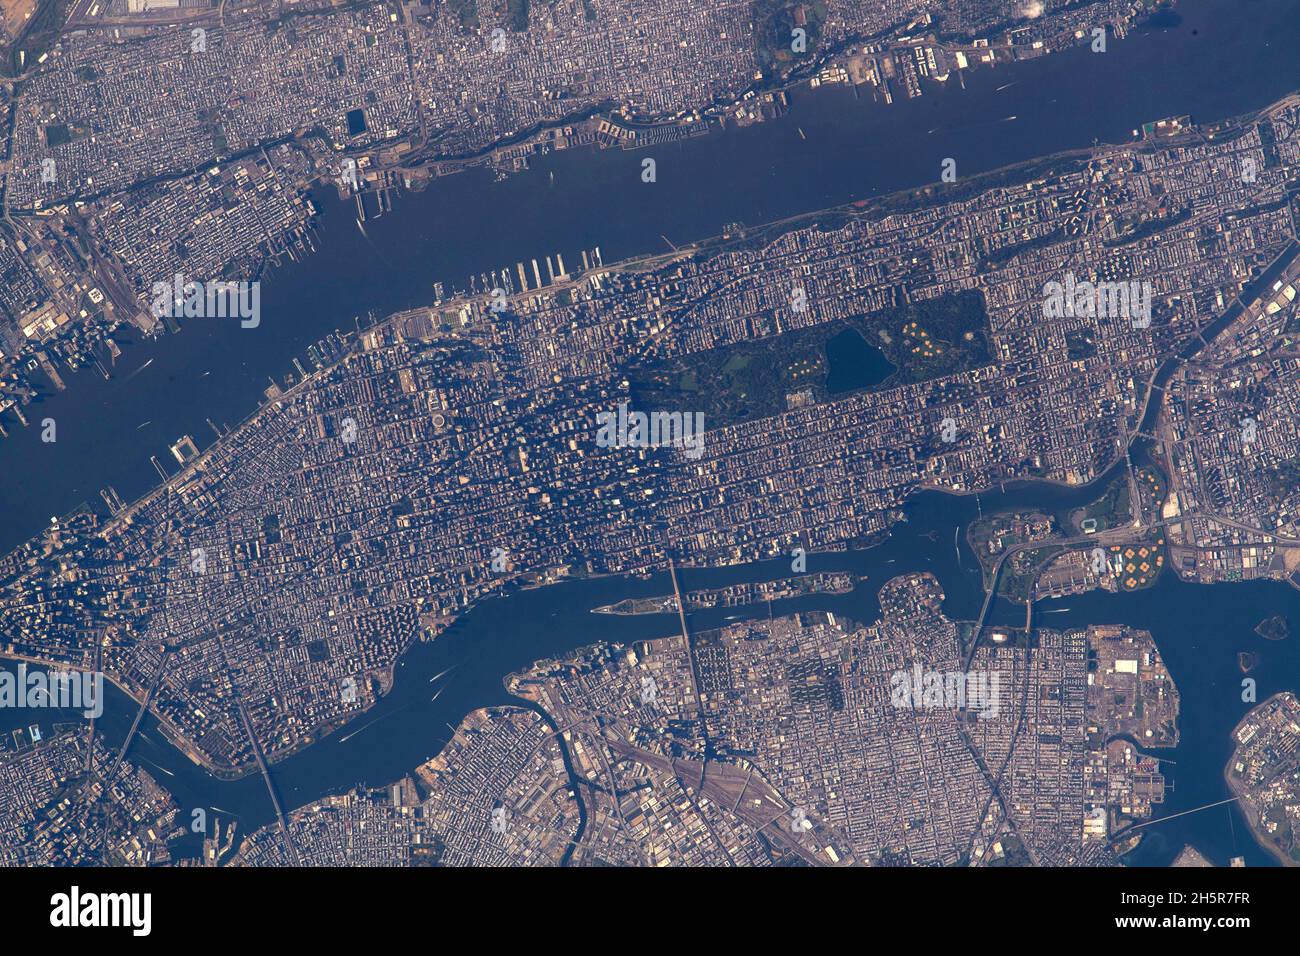 NEW YORK, États-Unis - 15 octobre 2021 - Central Park figure en bonne place sur cette photo de l'île de Manhattan à New York comme espace international Banque D'Images